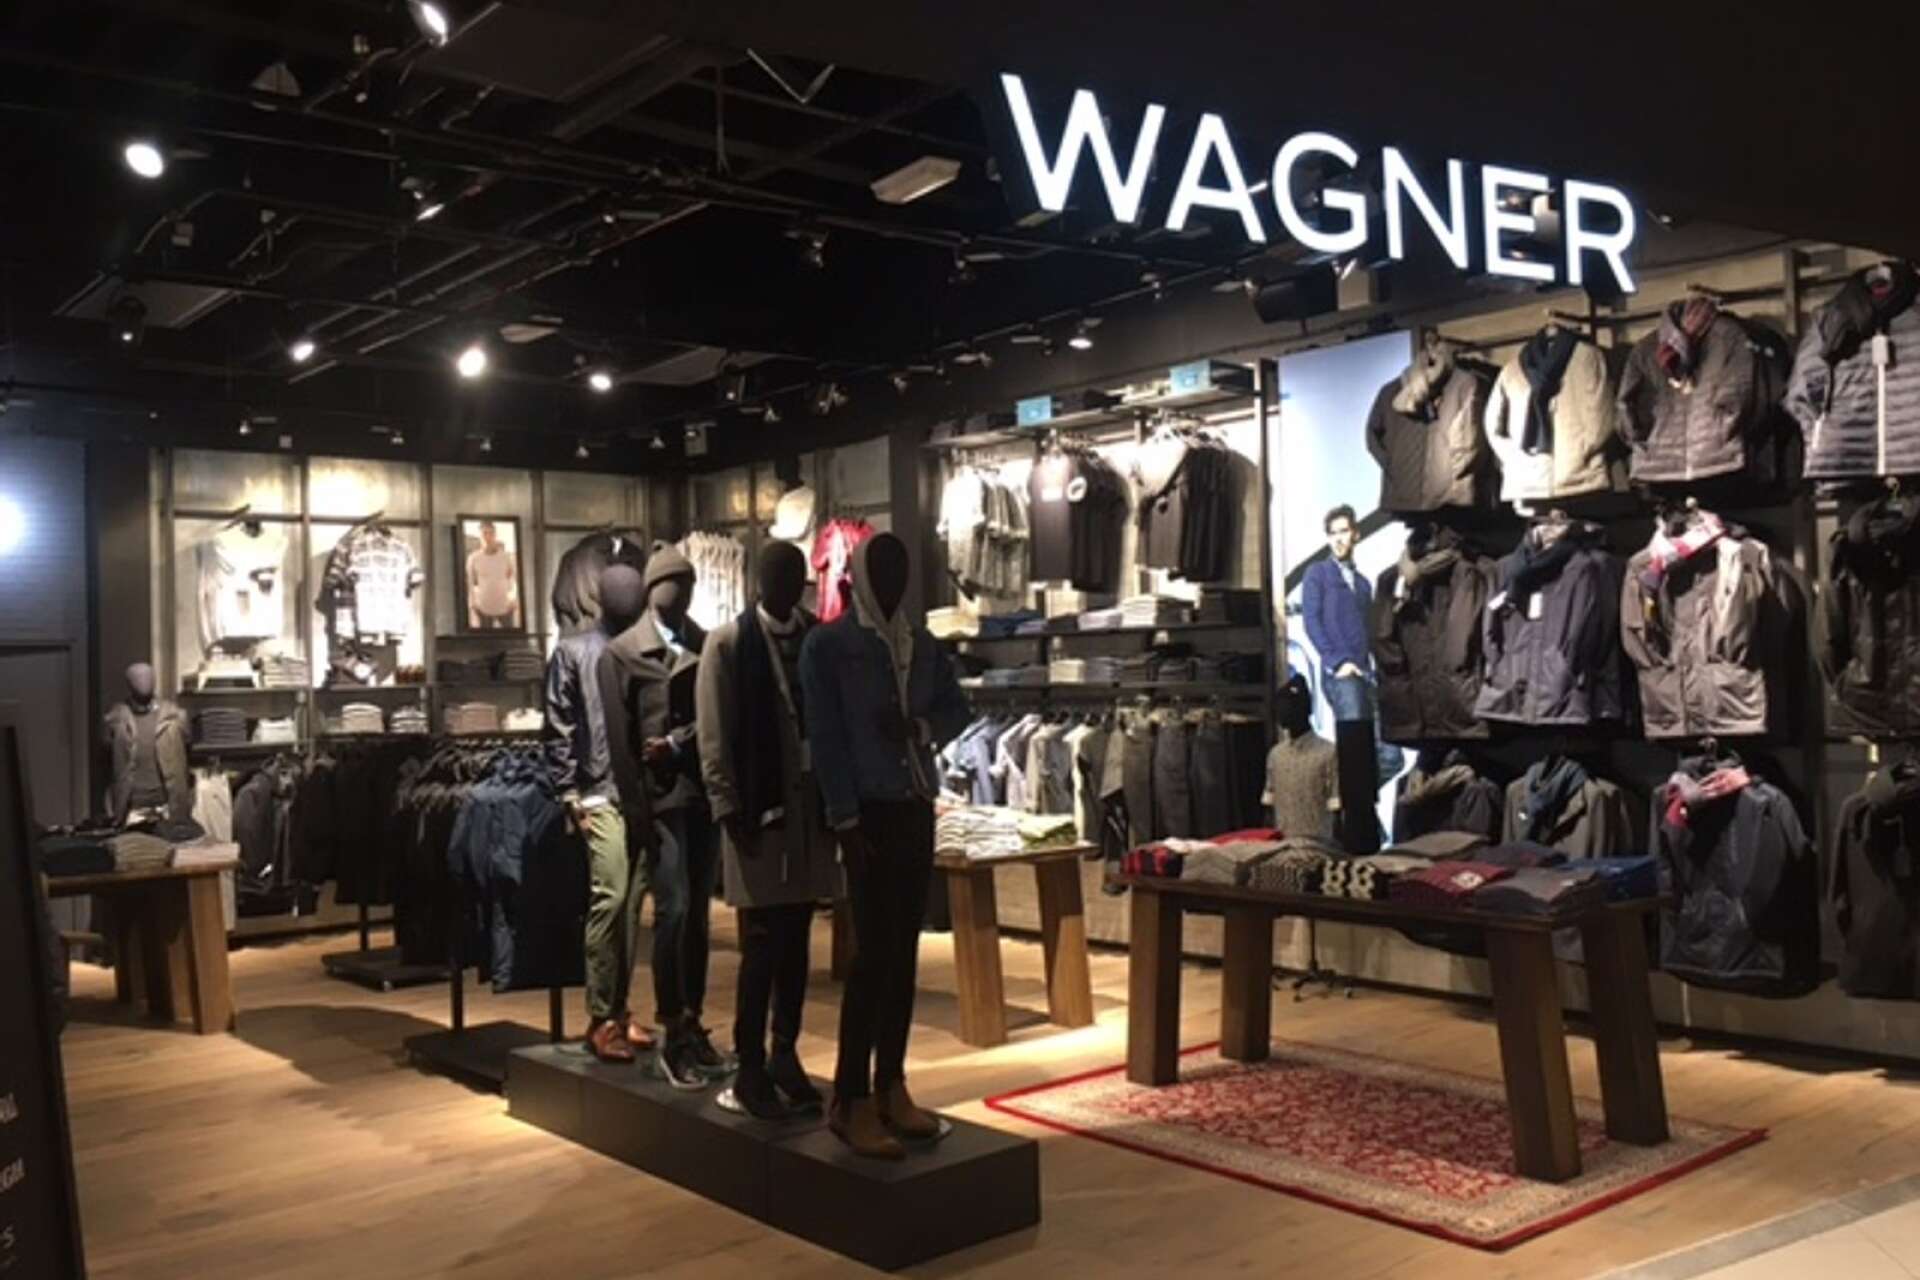 Wagners butik blir på 387 kvadratmeter och öppnas i de ytor som Teknikmagasinet och Gina Tricot hade på plan två i Mitticity.